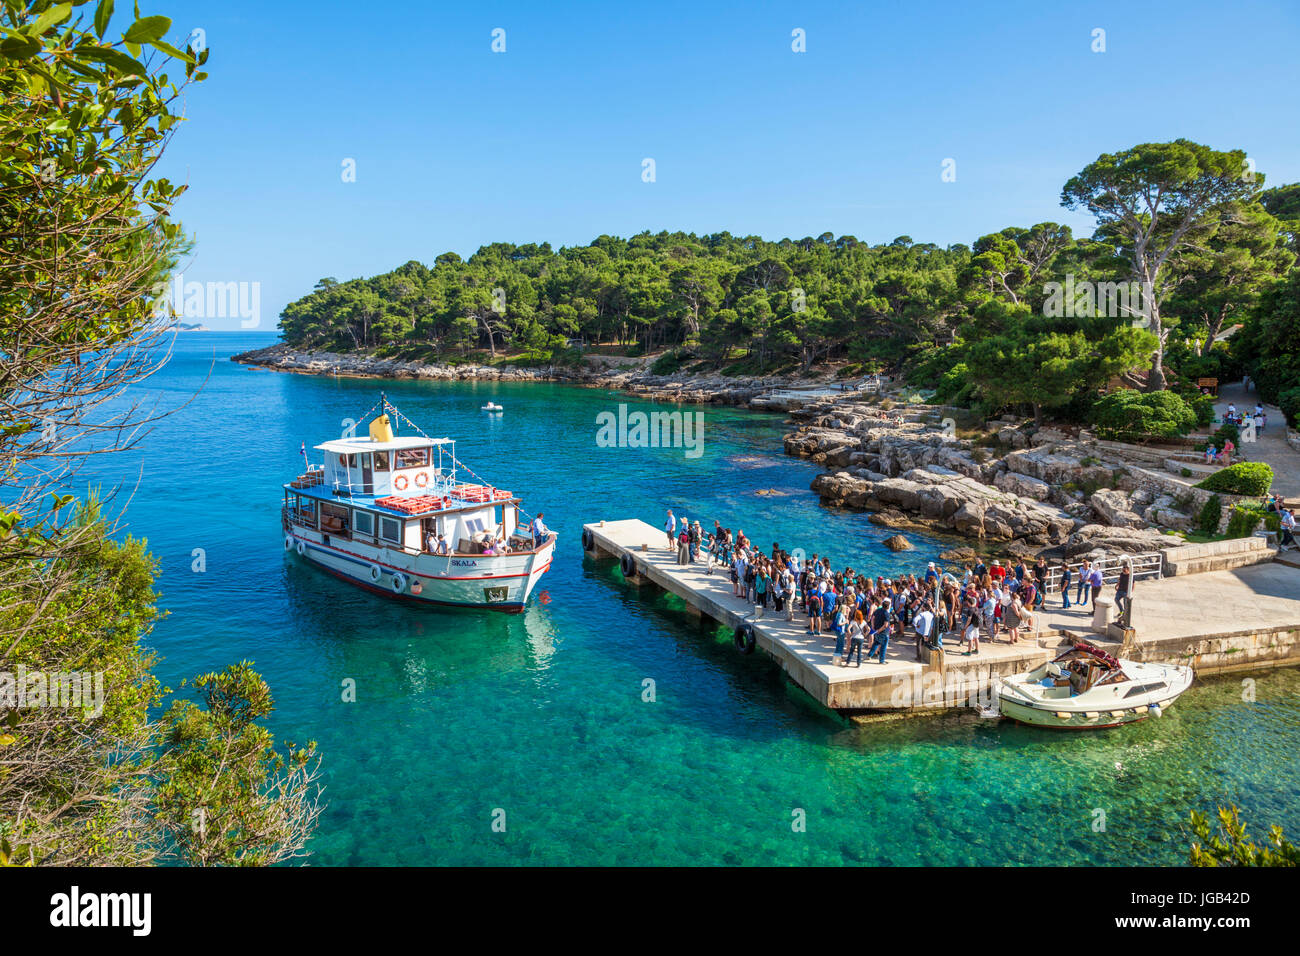 Croatie Dubrovnik Croatie côte Dalmate gens touristes attendent le Ferry arrivant à la station d'accueil sur l'île de Lokrum Dubrovnik Croatie Mer Adriatique Banque D'Images